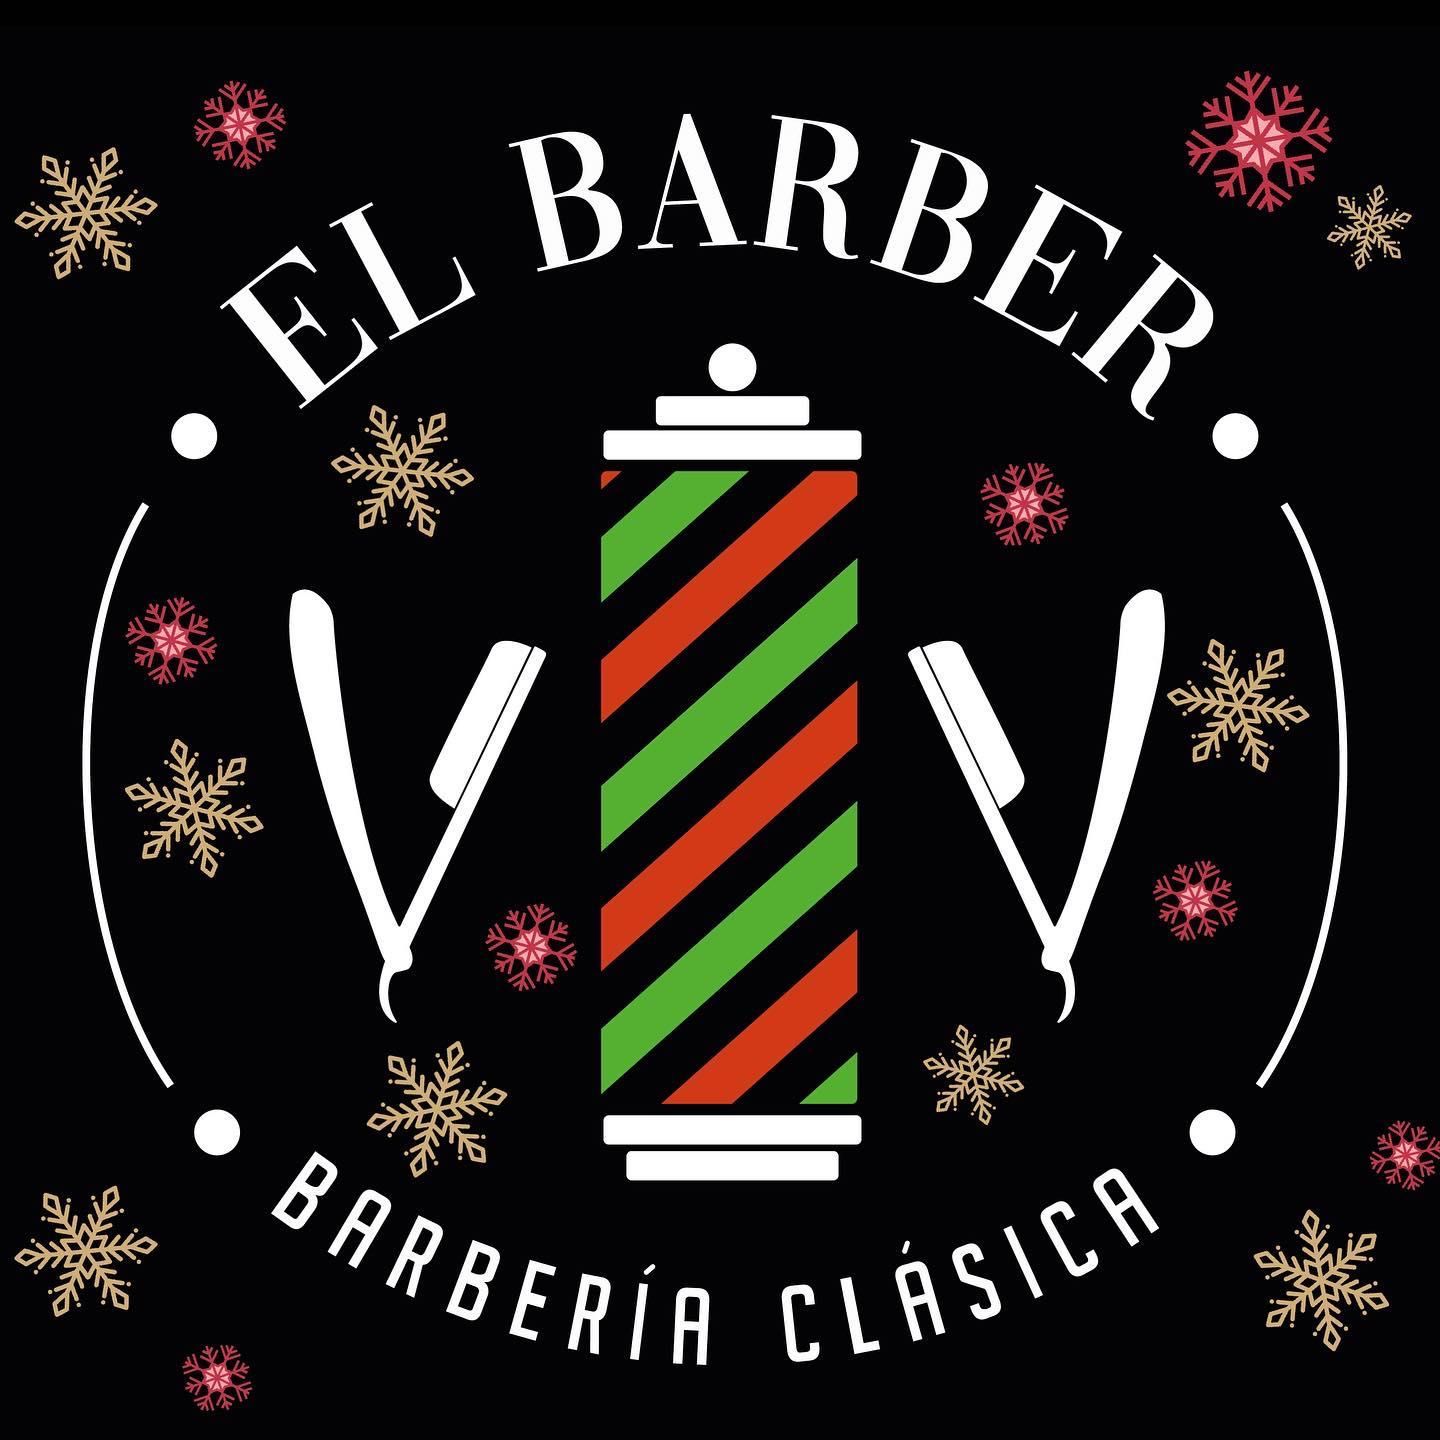 El Barber, Avenida Zaragoza No. 532, El Paso